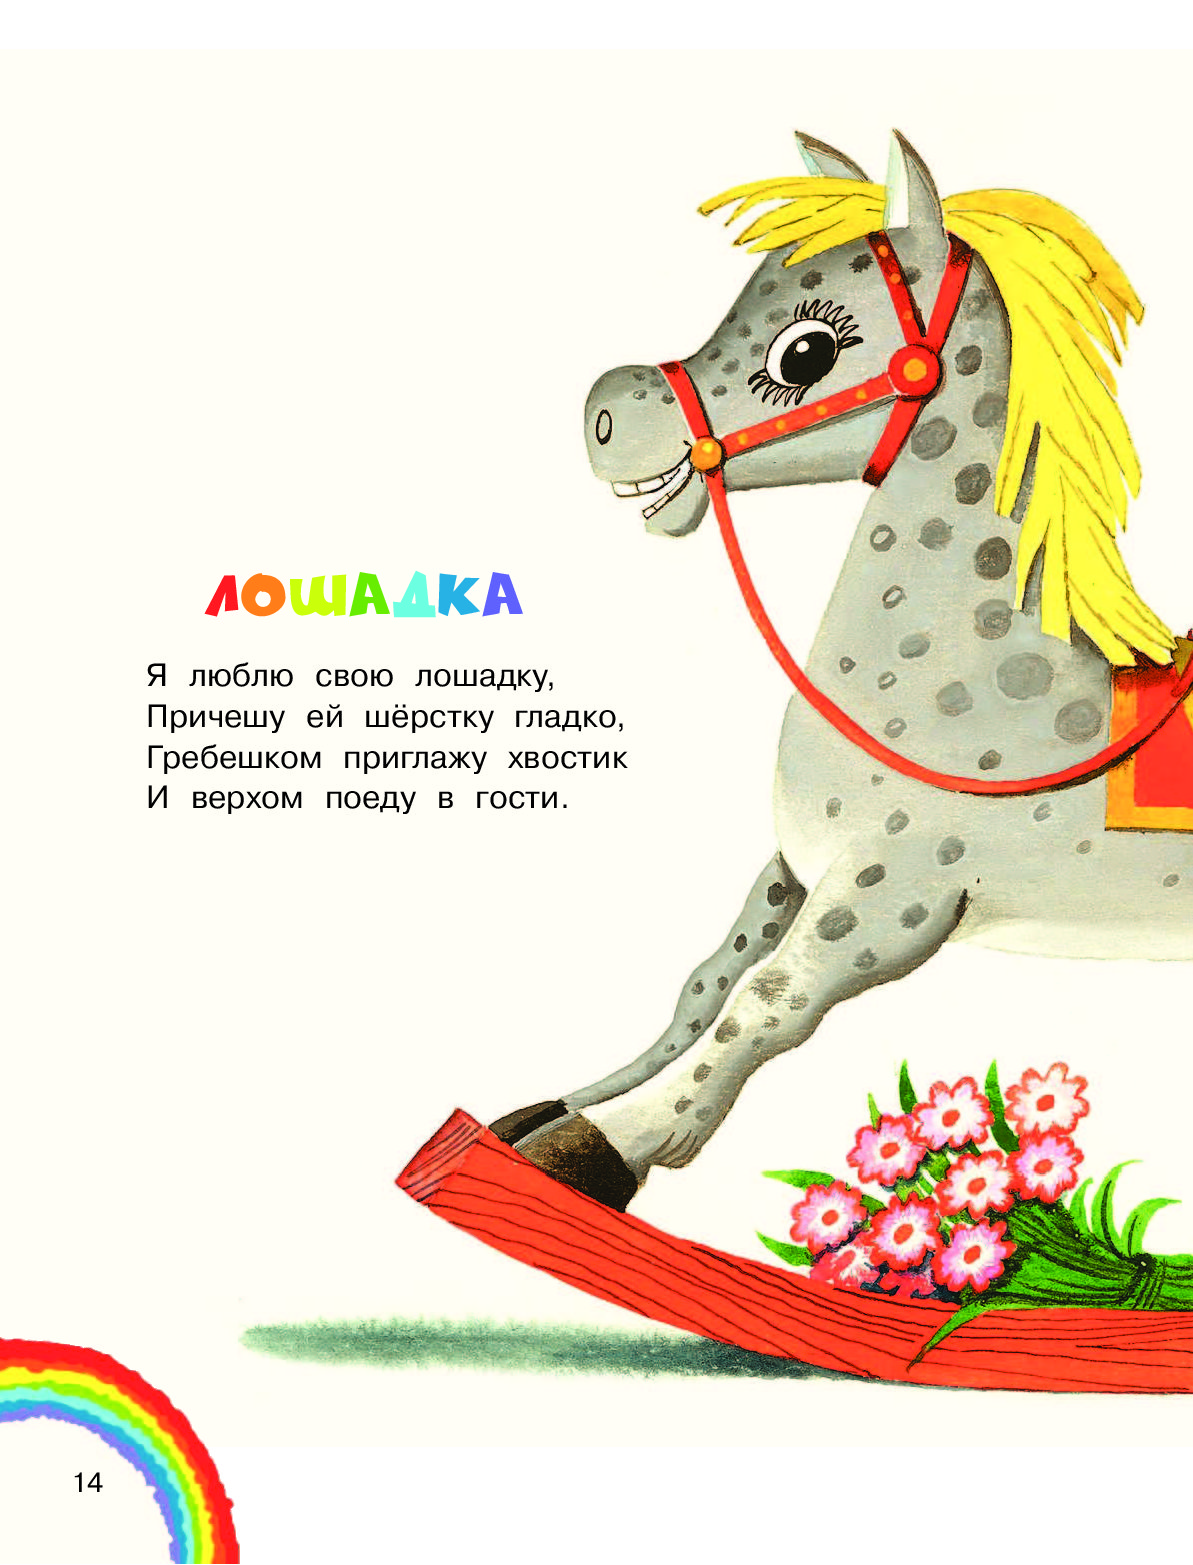 Лошадка детские песенки. Стихотворение про лошадку. Детские стихи про лошадку. Стих про лошадку для детей. Стихи про коня детские.